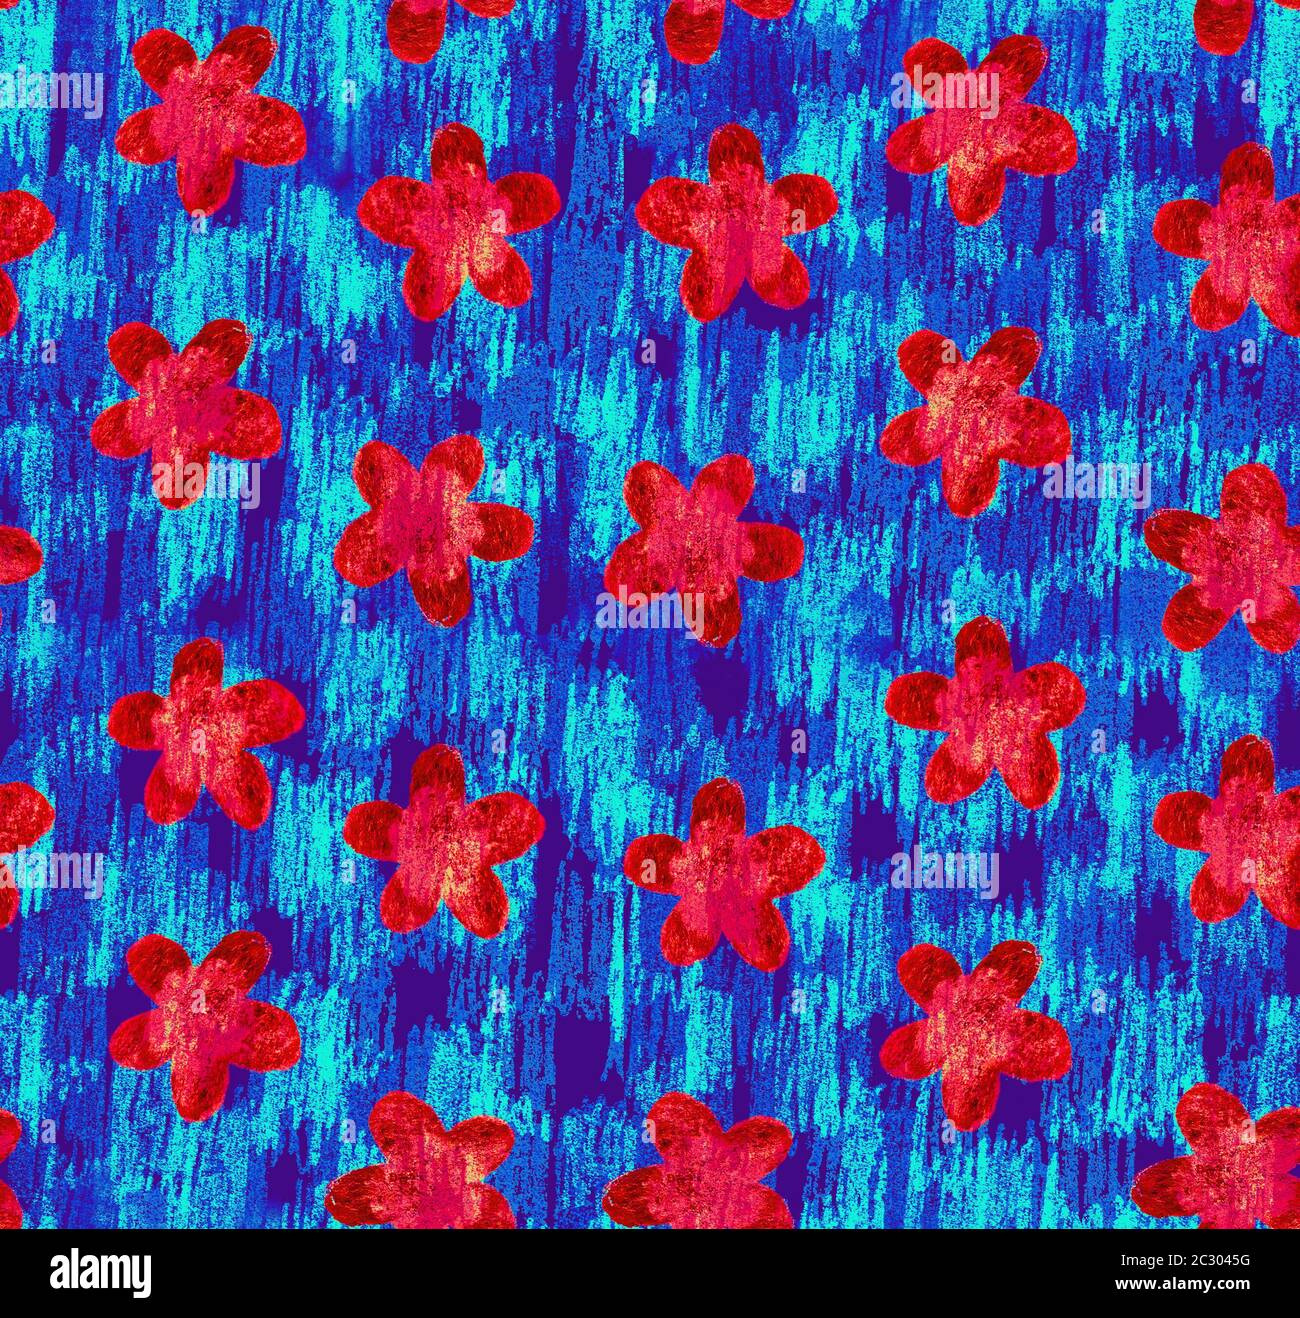 Grunge Blumen Streifen Hand gemacht Hintergrund. Abstrakt blau rot floral nahtlose Muster für Stoff, Geschenkpapier, Sommer feninen Hintergrund, Stockfoto